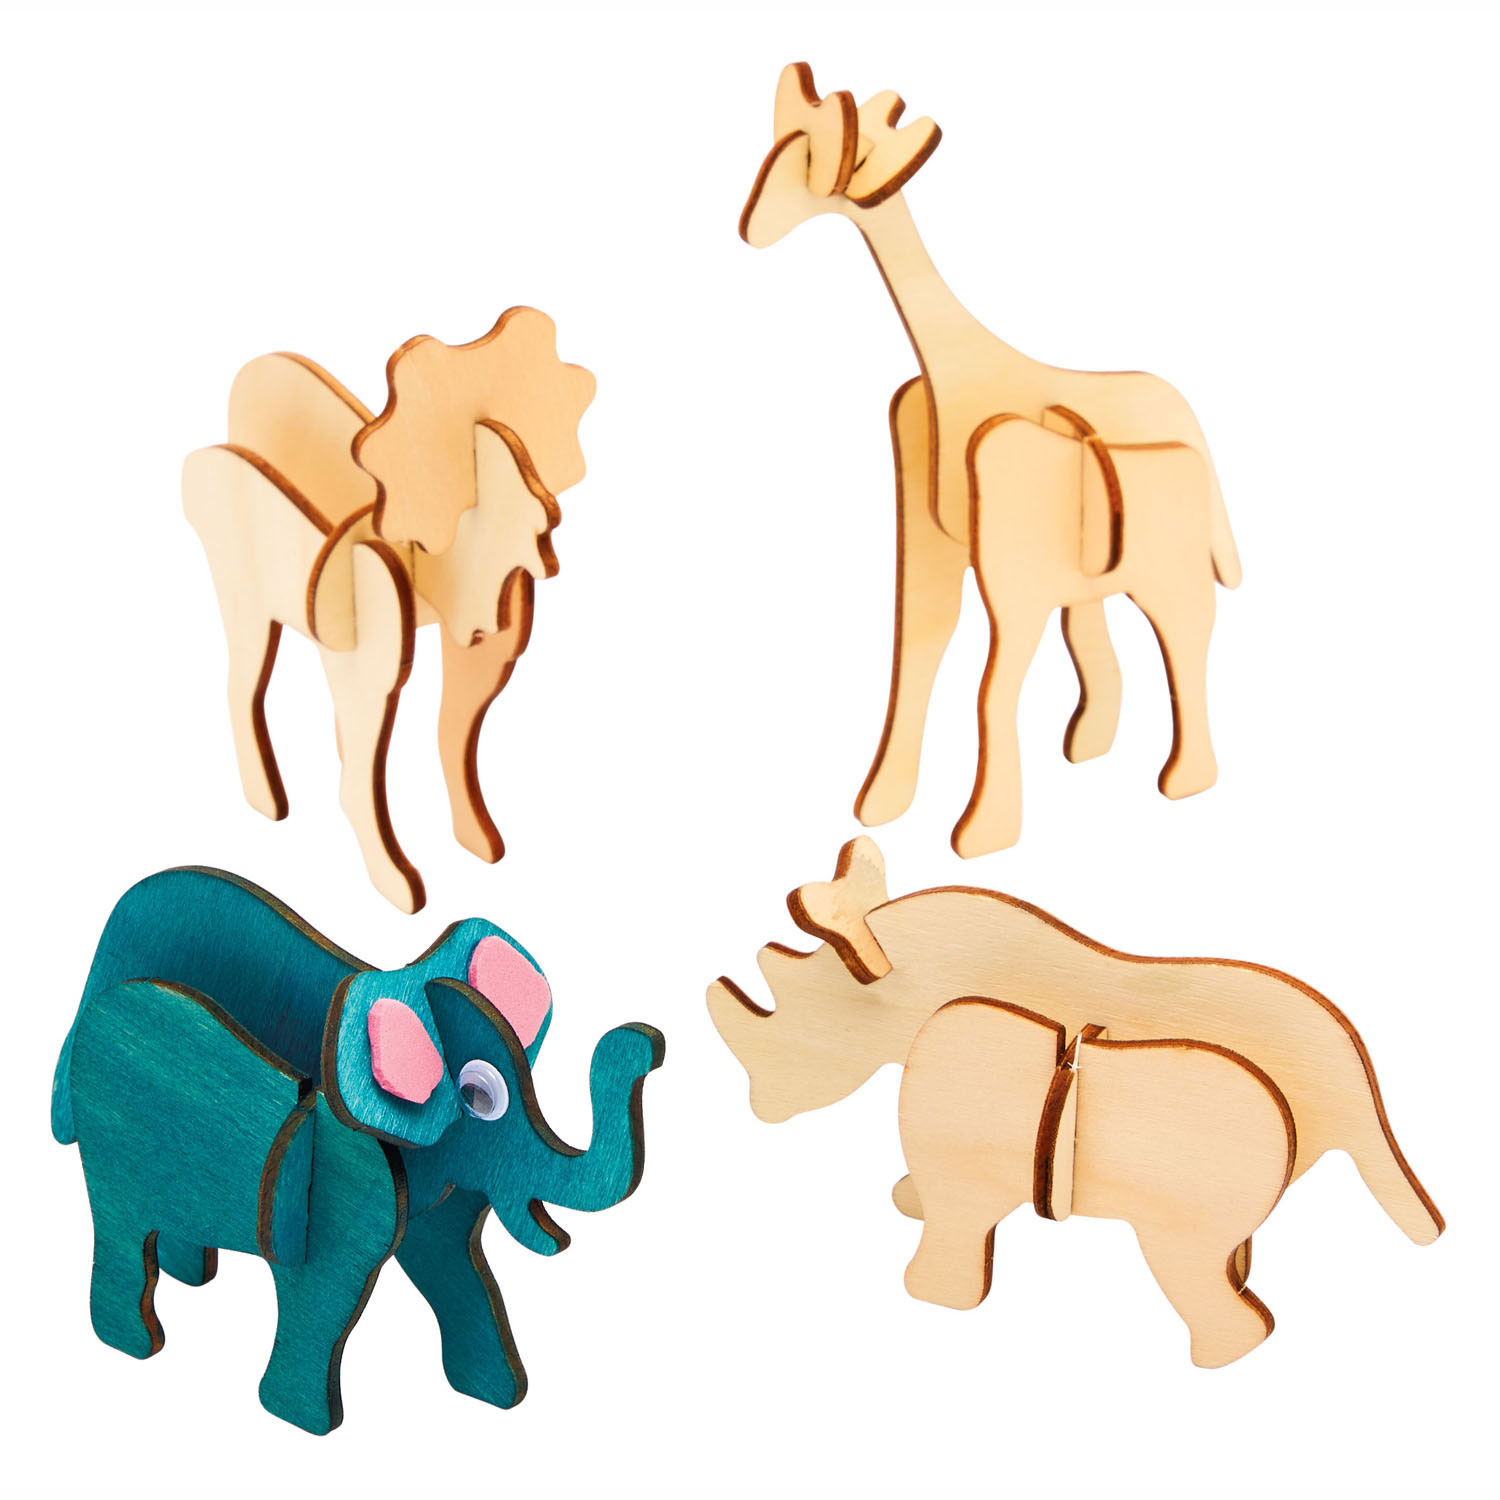 Färbungen – Gestalten und dekorieren Sie Ihr 3D-Holzpuzzle „Dschungeltiere“, 4er-Set